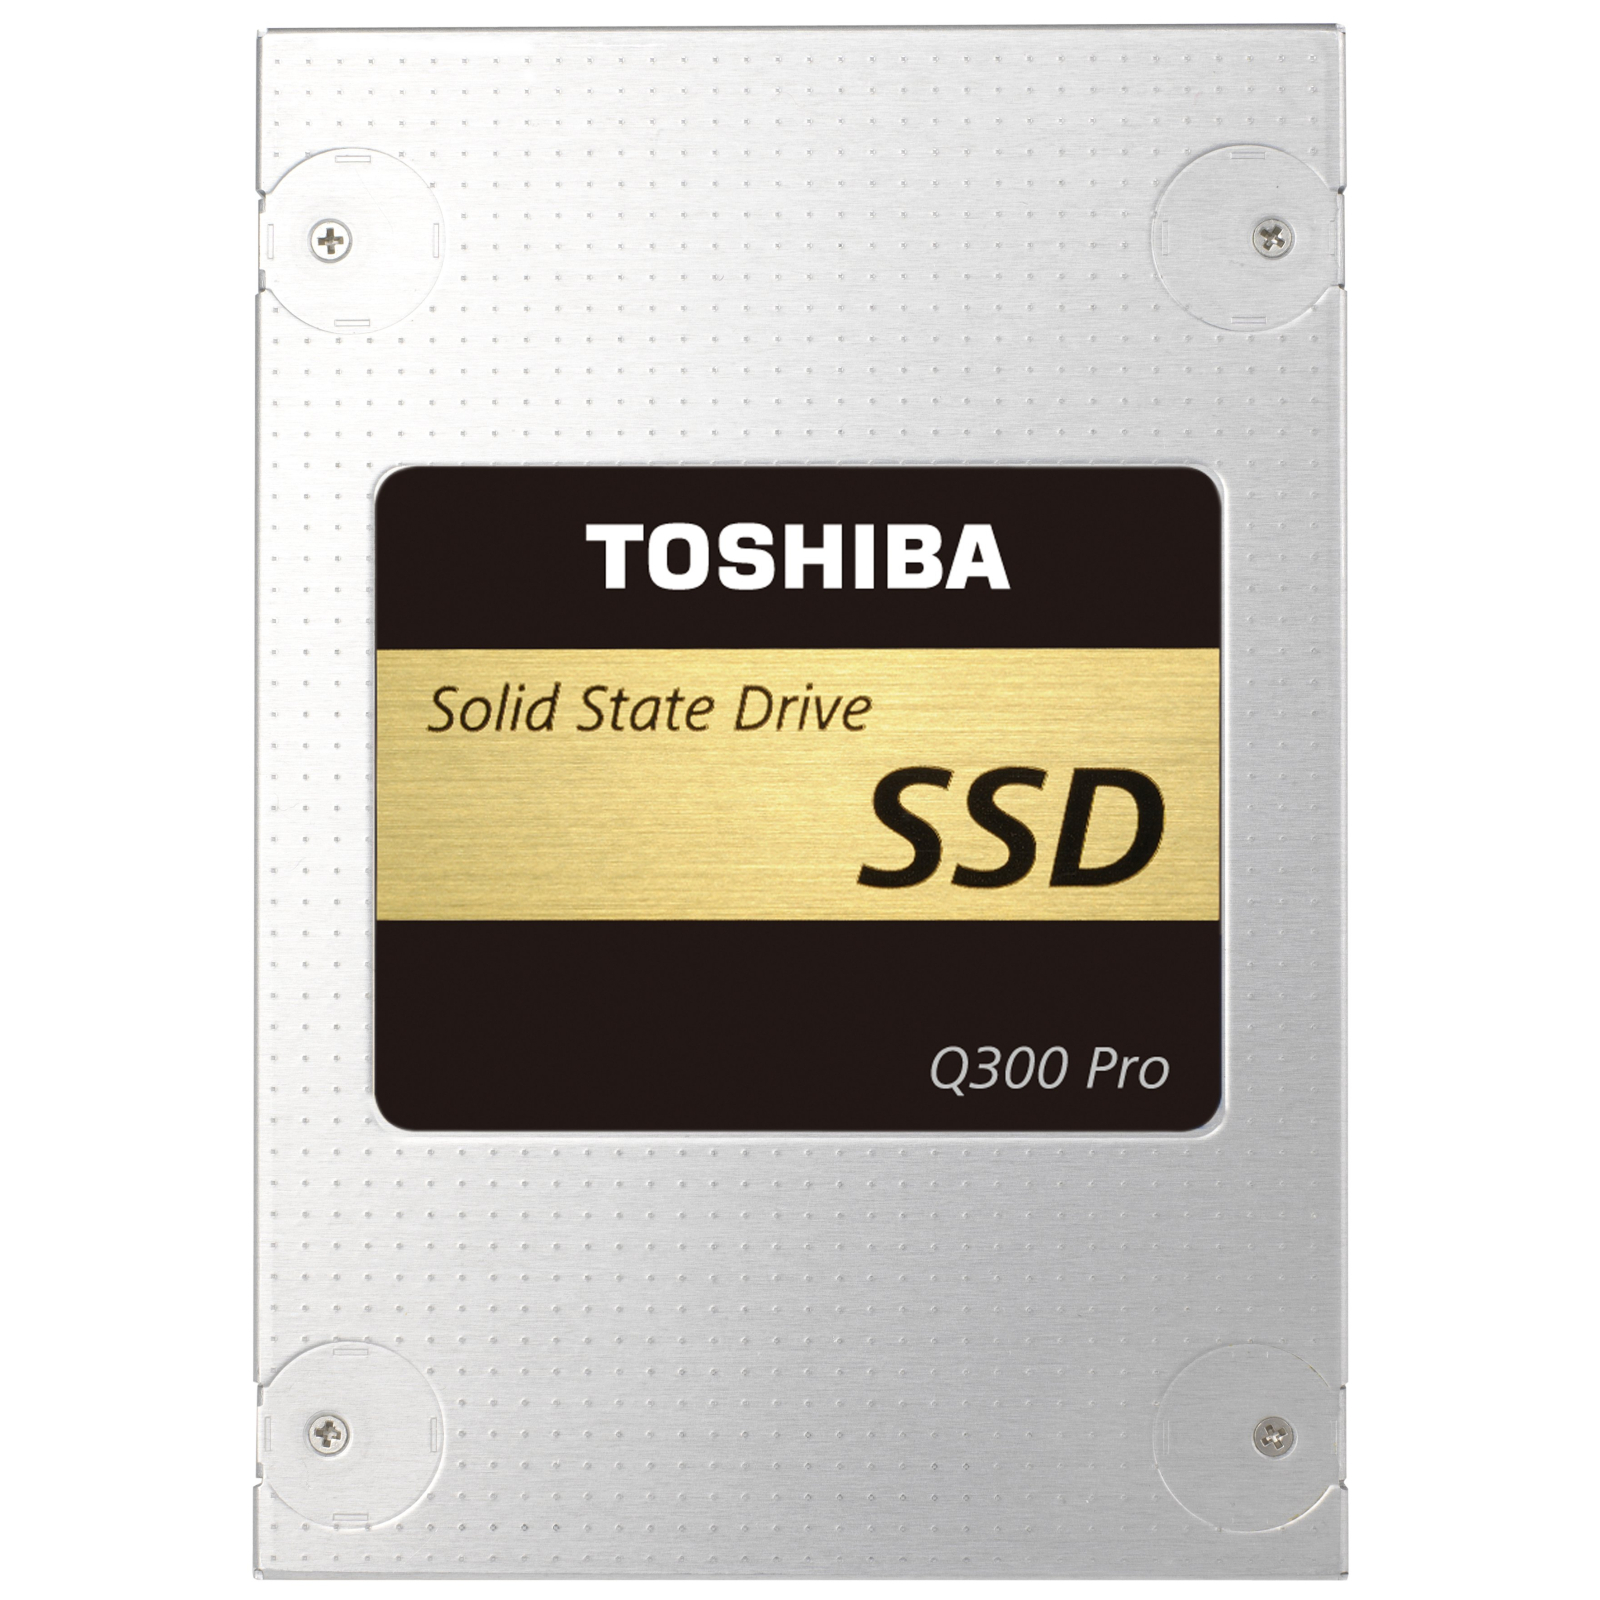 Накопичувач SSD 2.5" 512GB Toshiba (HDTSA51EZSTA)